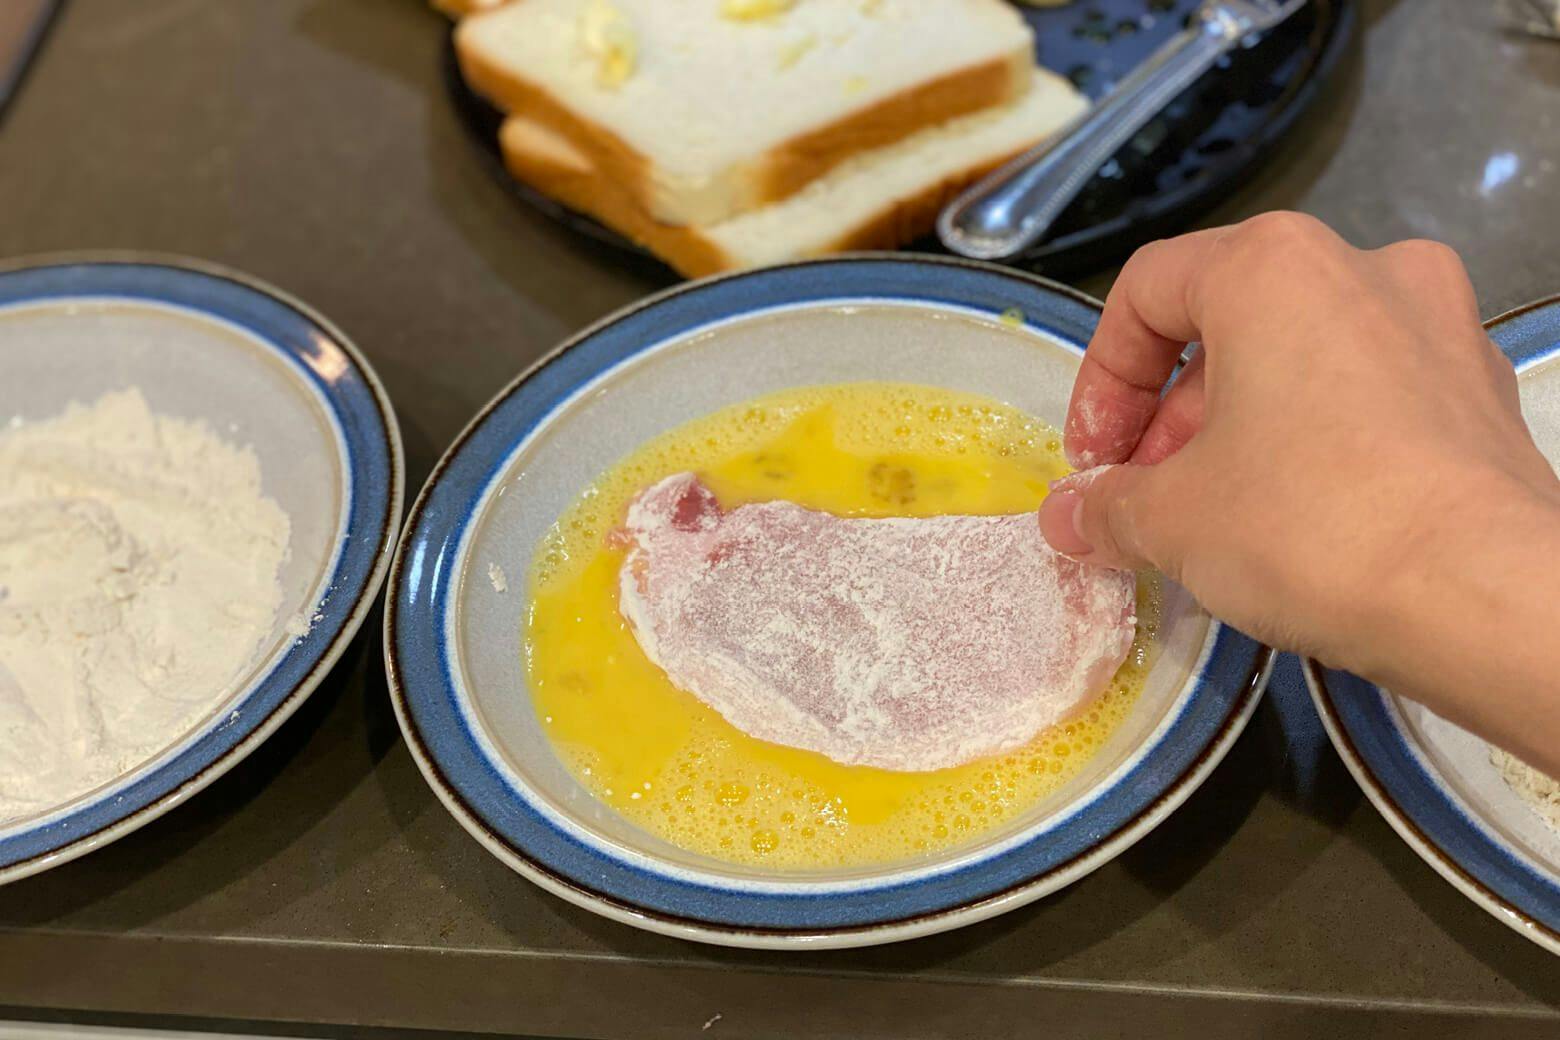 Pork loin with flour dip into eggs